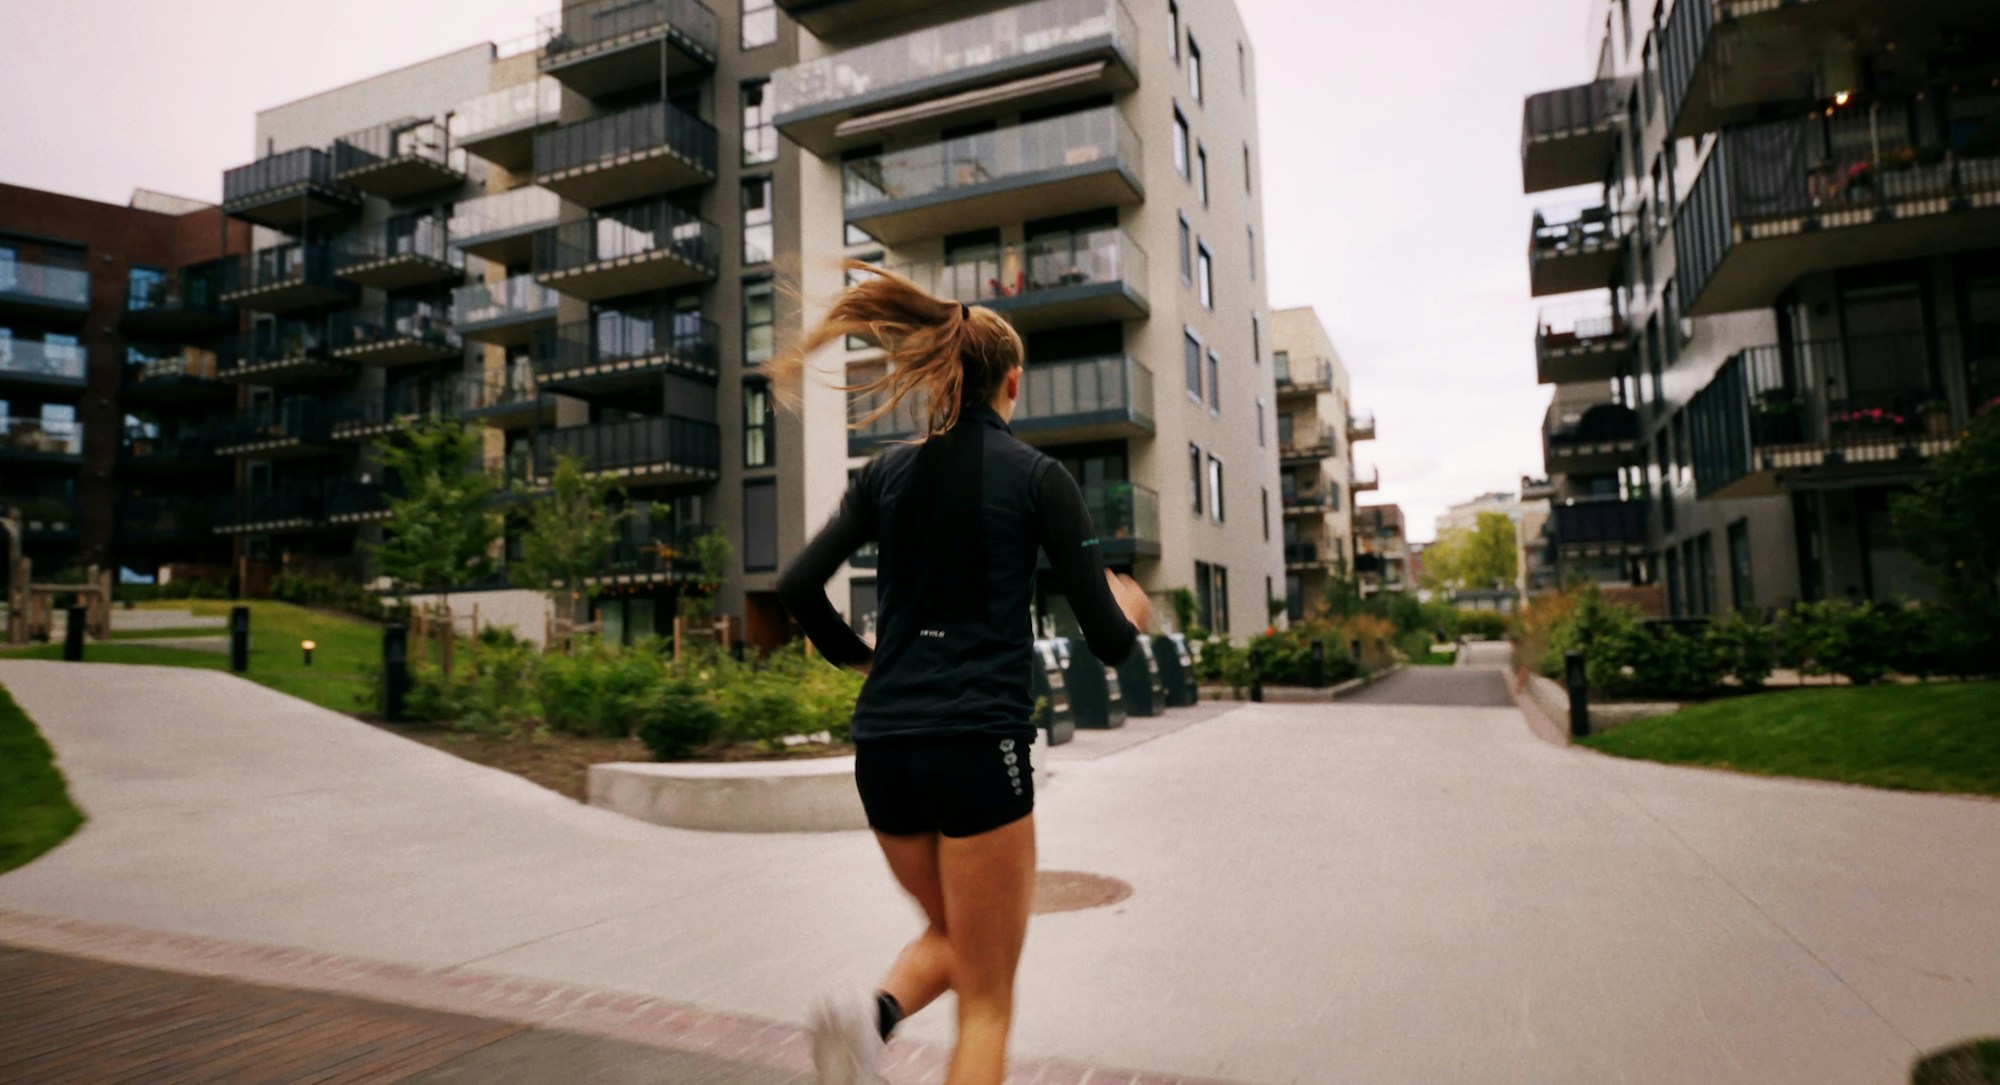 Sigrid løper med ryggen til mellom boligbygg i Frysjaparken.